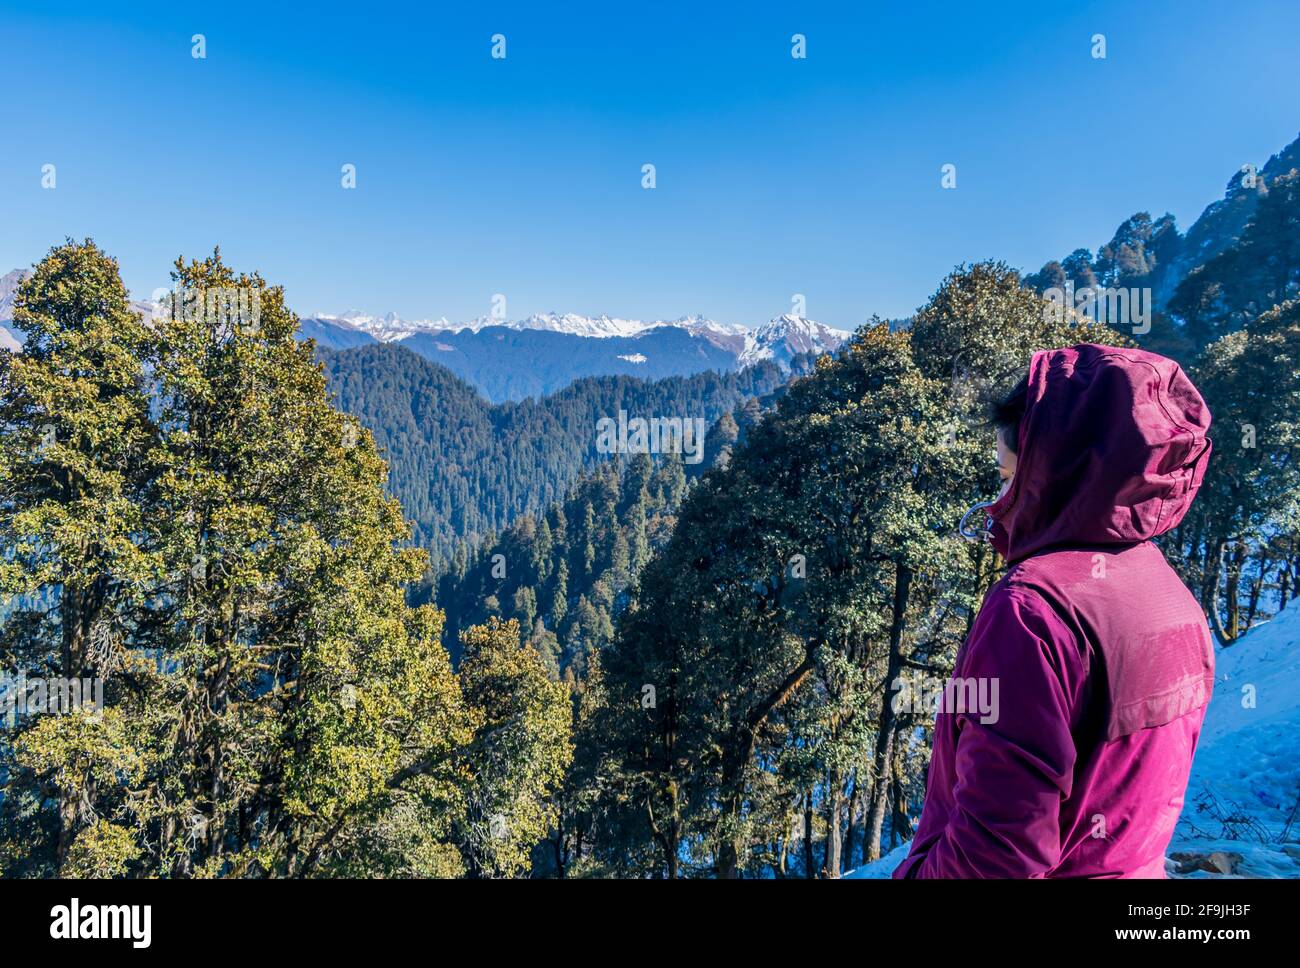 Snow capped mountain ranges, Jalori Pass, Tirthan Valley, Himachal Pradesh, India Stock Photo